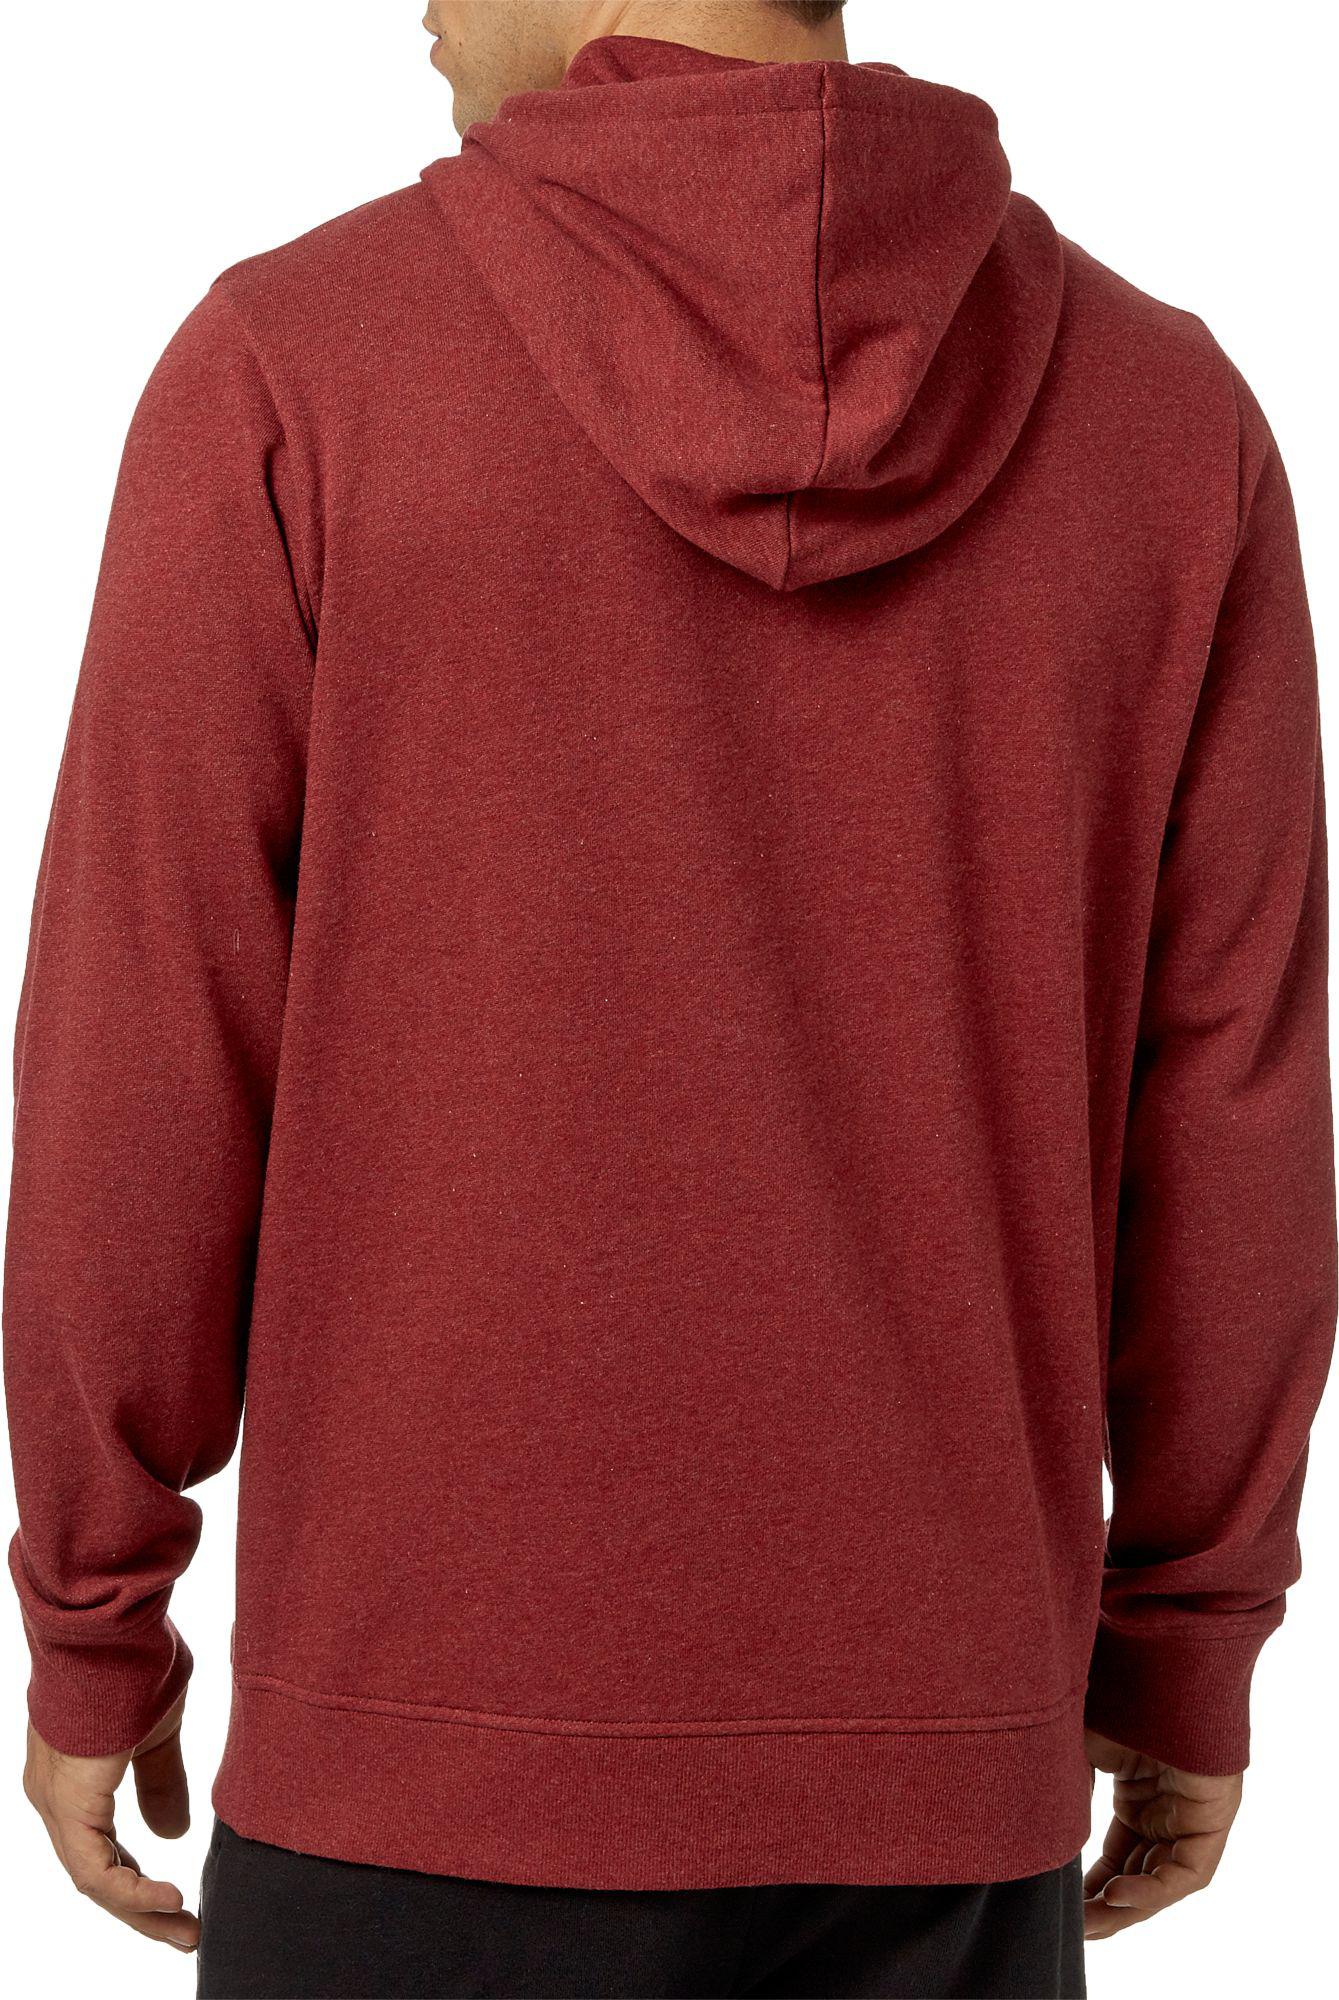 reebok men's heather cotton fleece hoodie